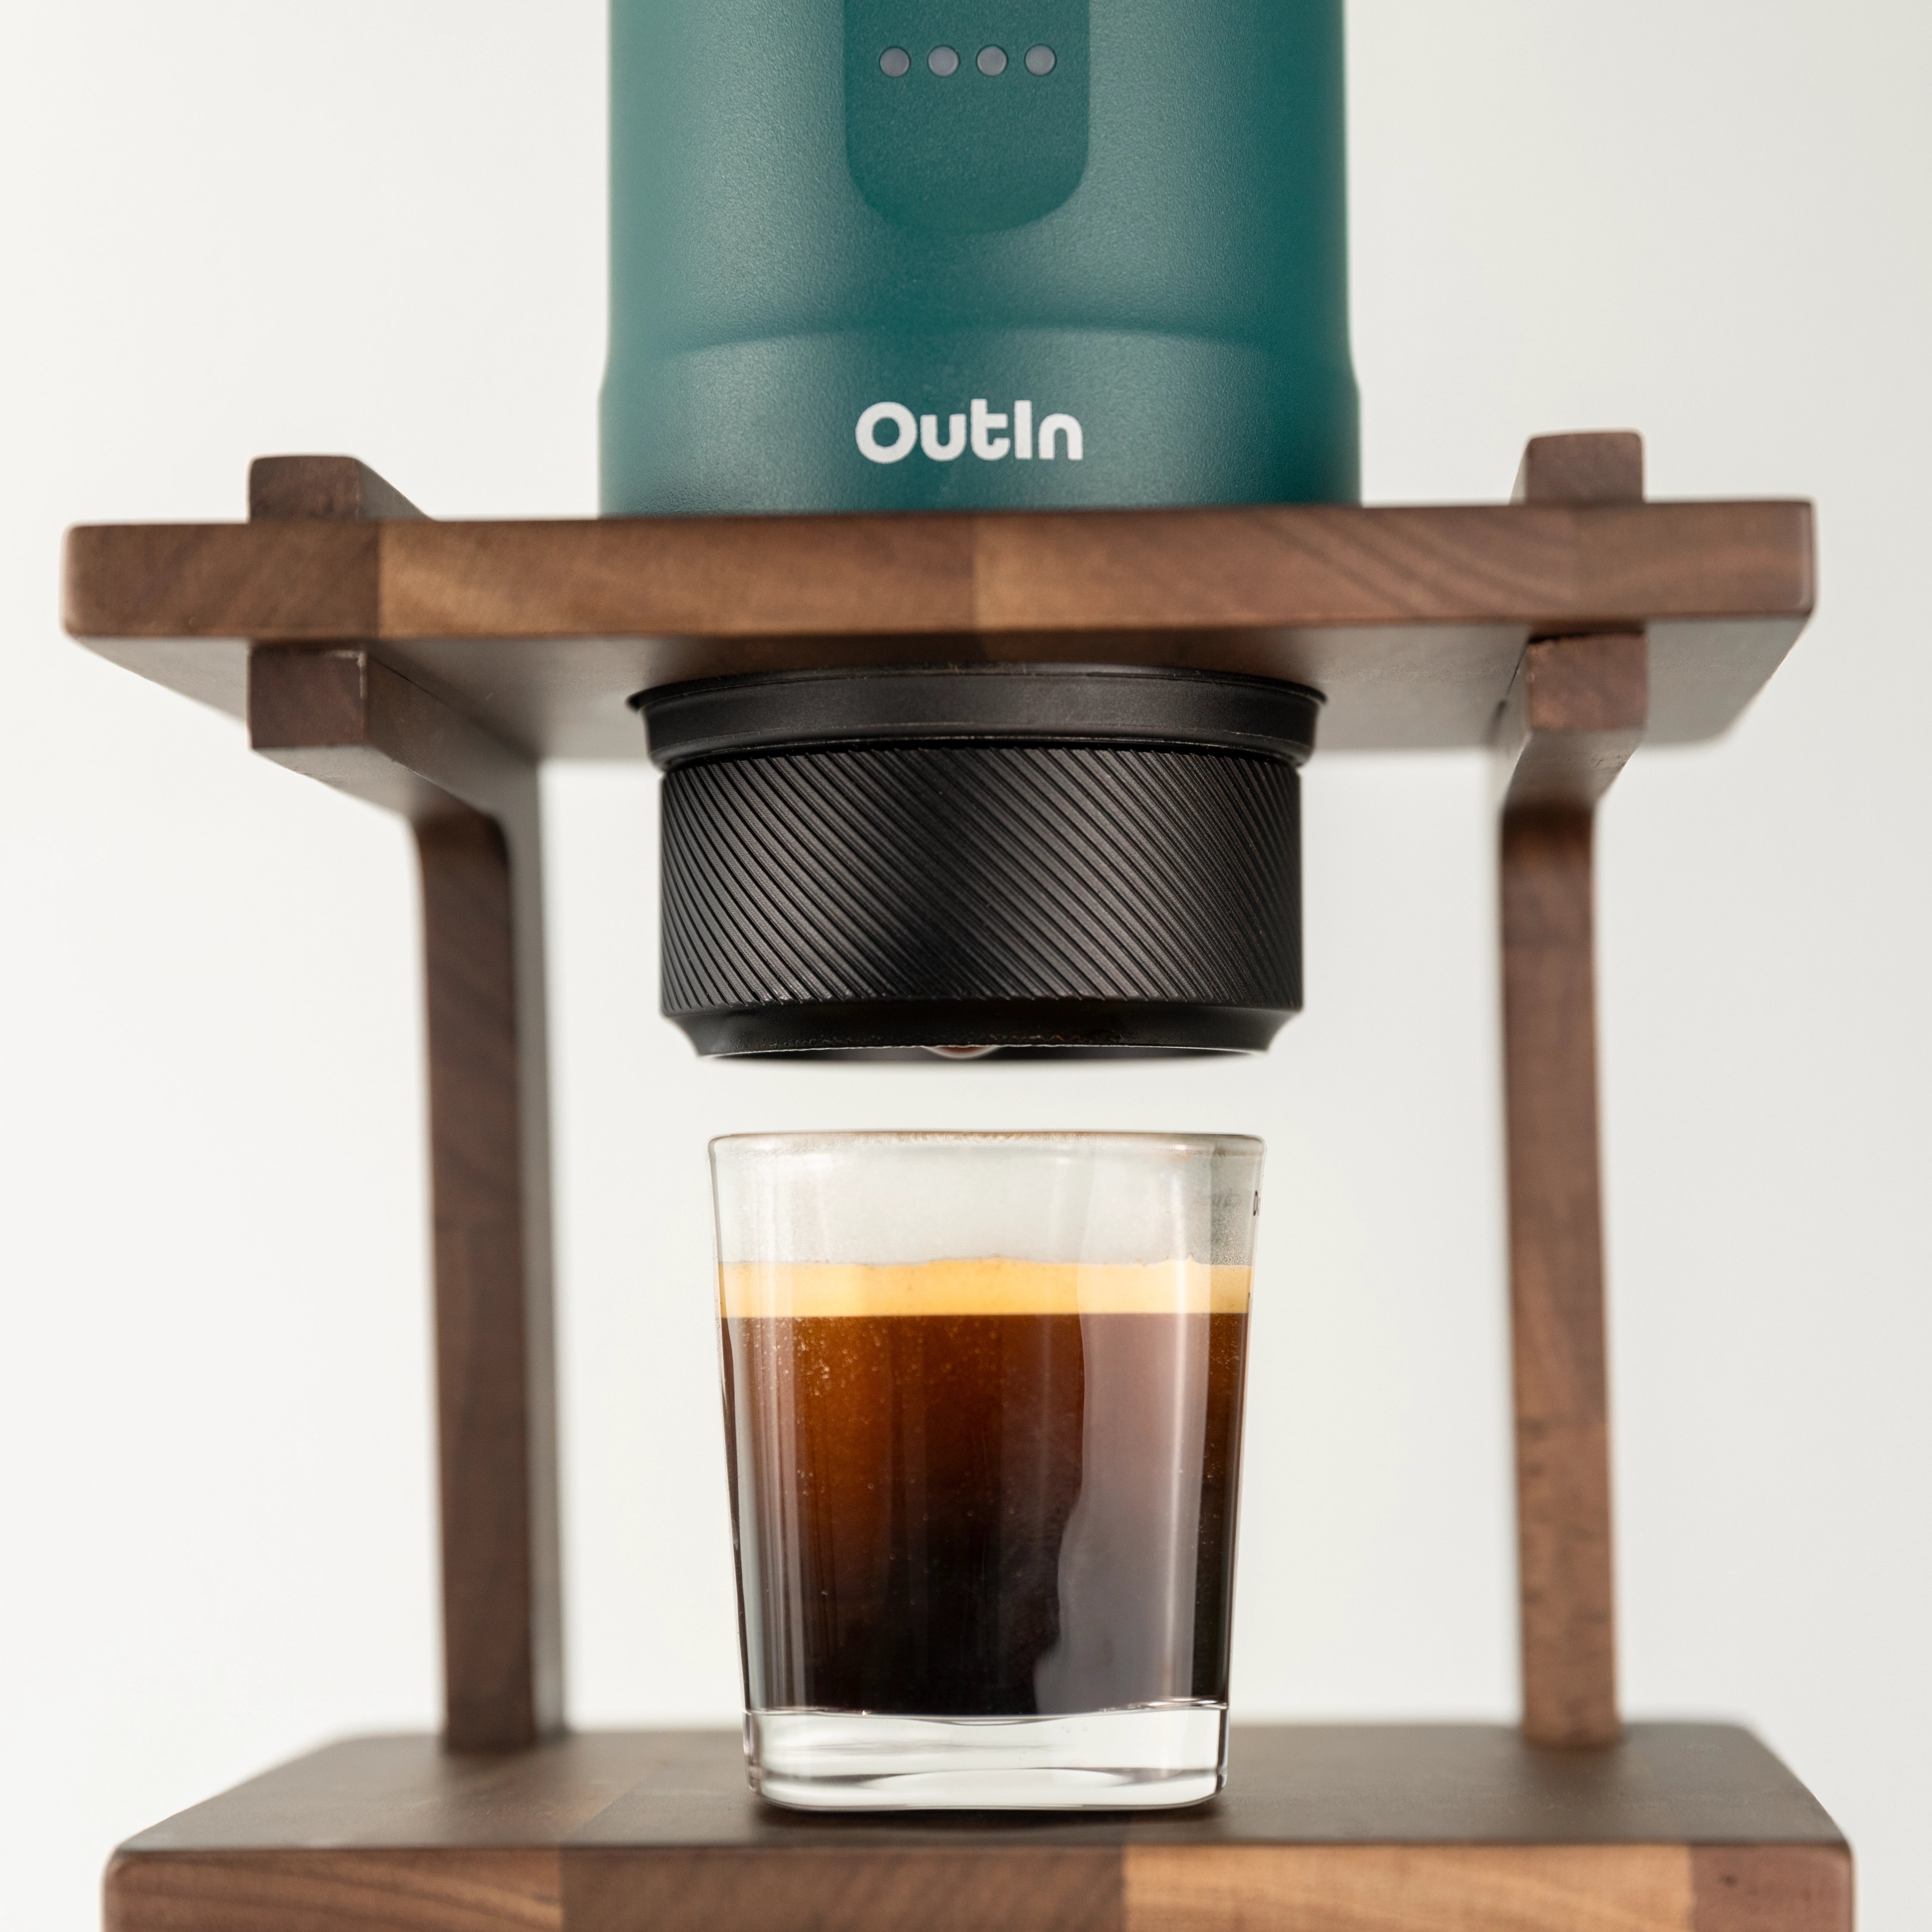 Outin Nano, Portable Electric Espresso Maker